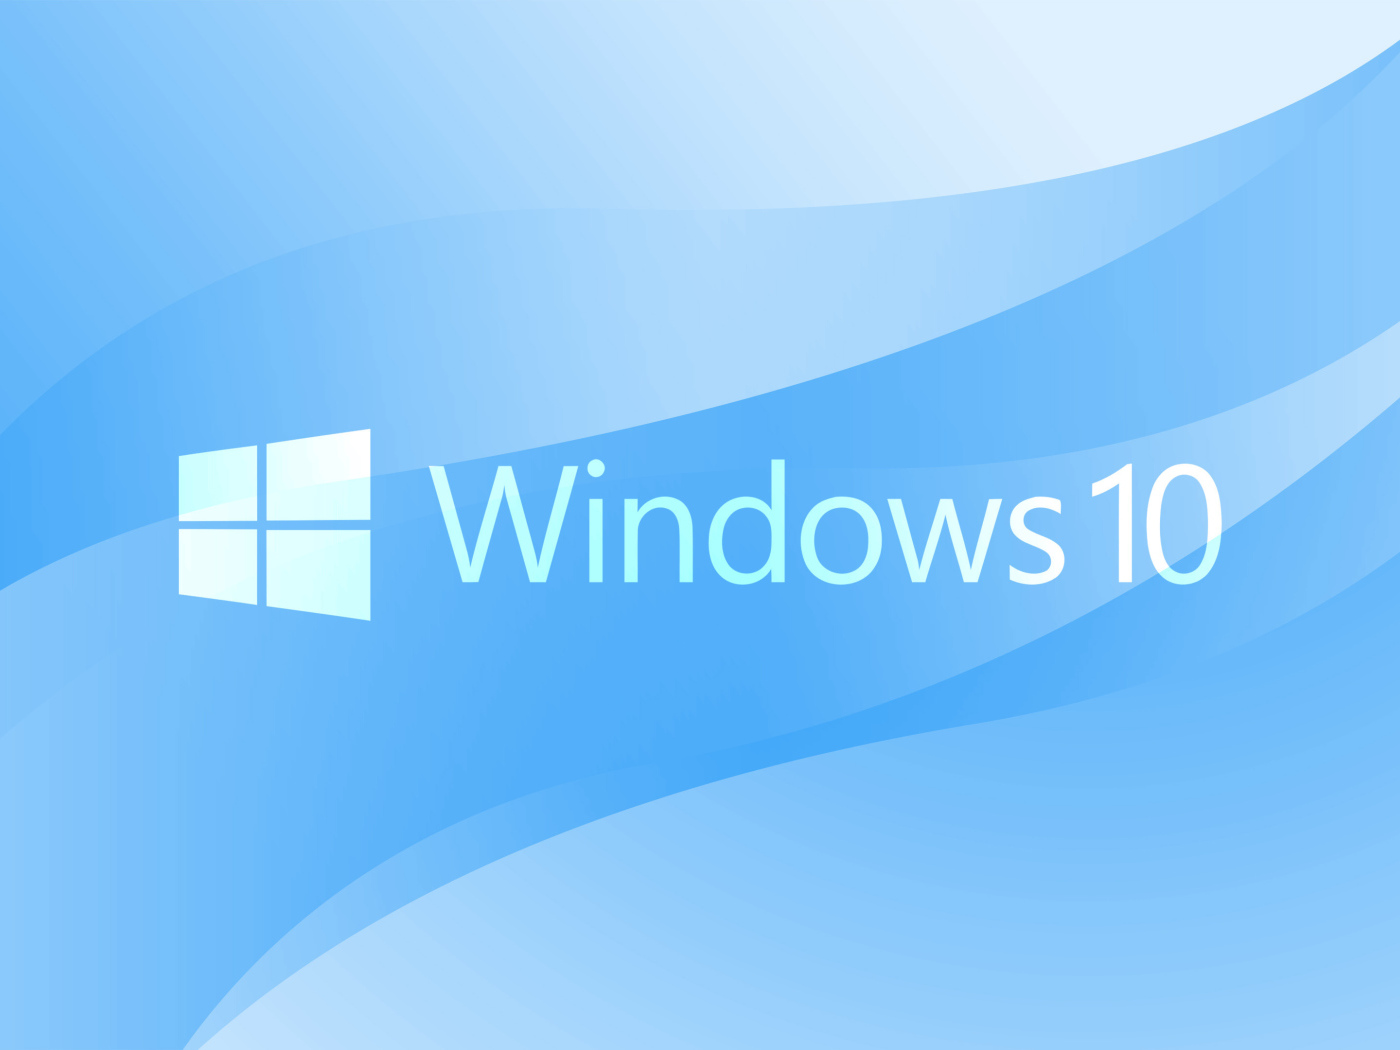 Логотип операционной системы  Windows 10 на голубом фоне